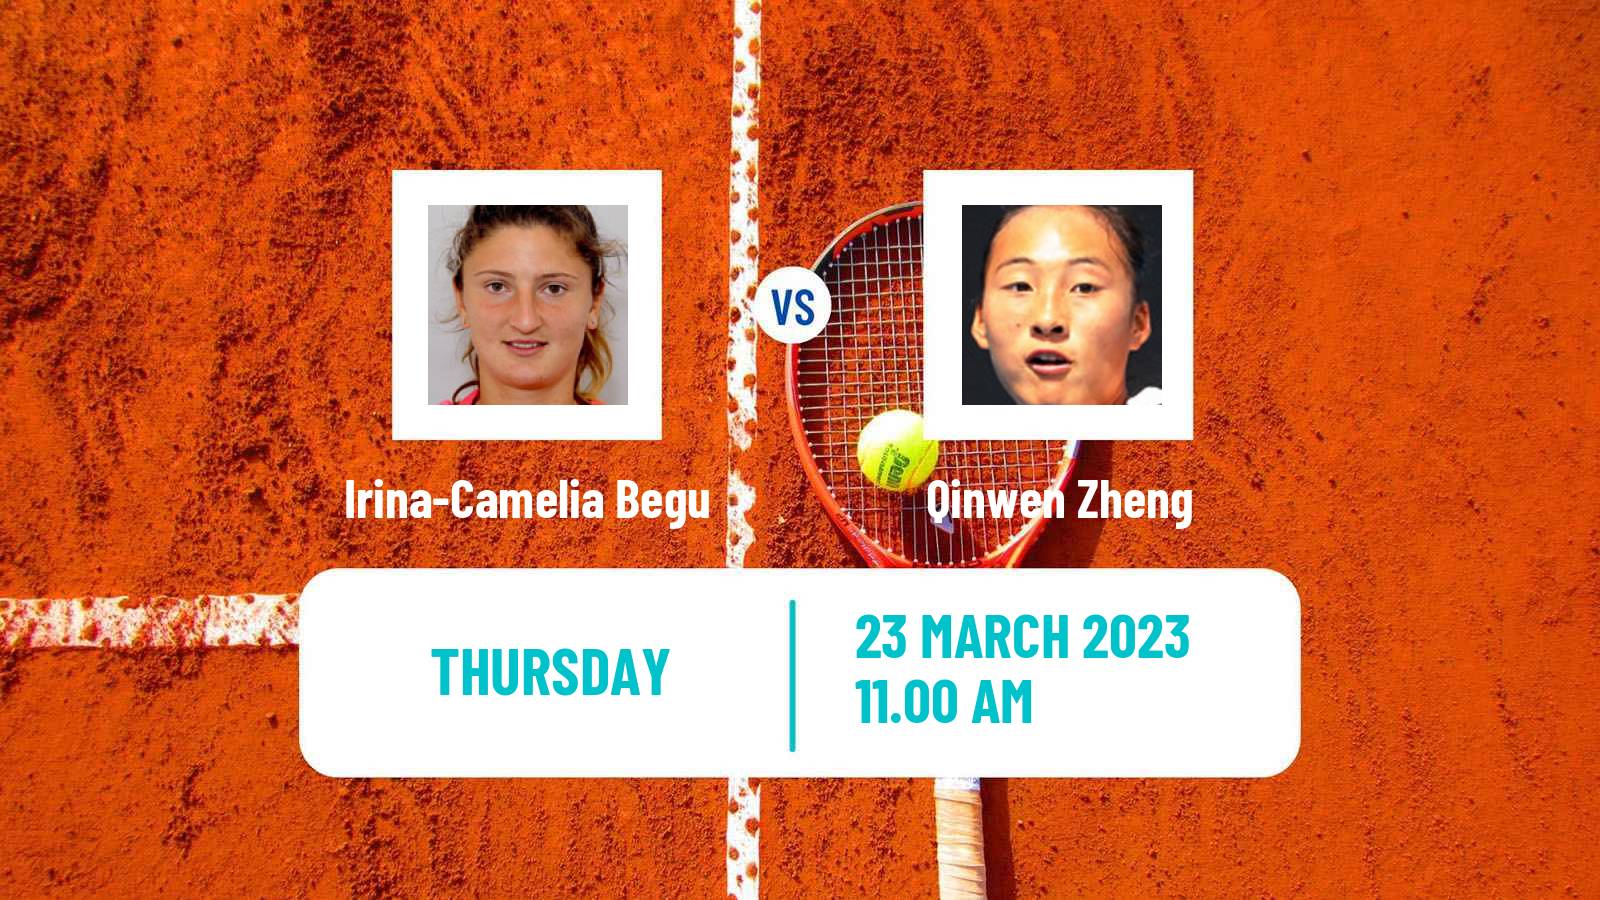 Tennis WTA Miami Irina-Camelia Begu - Qinwen Zheng